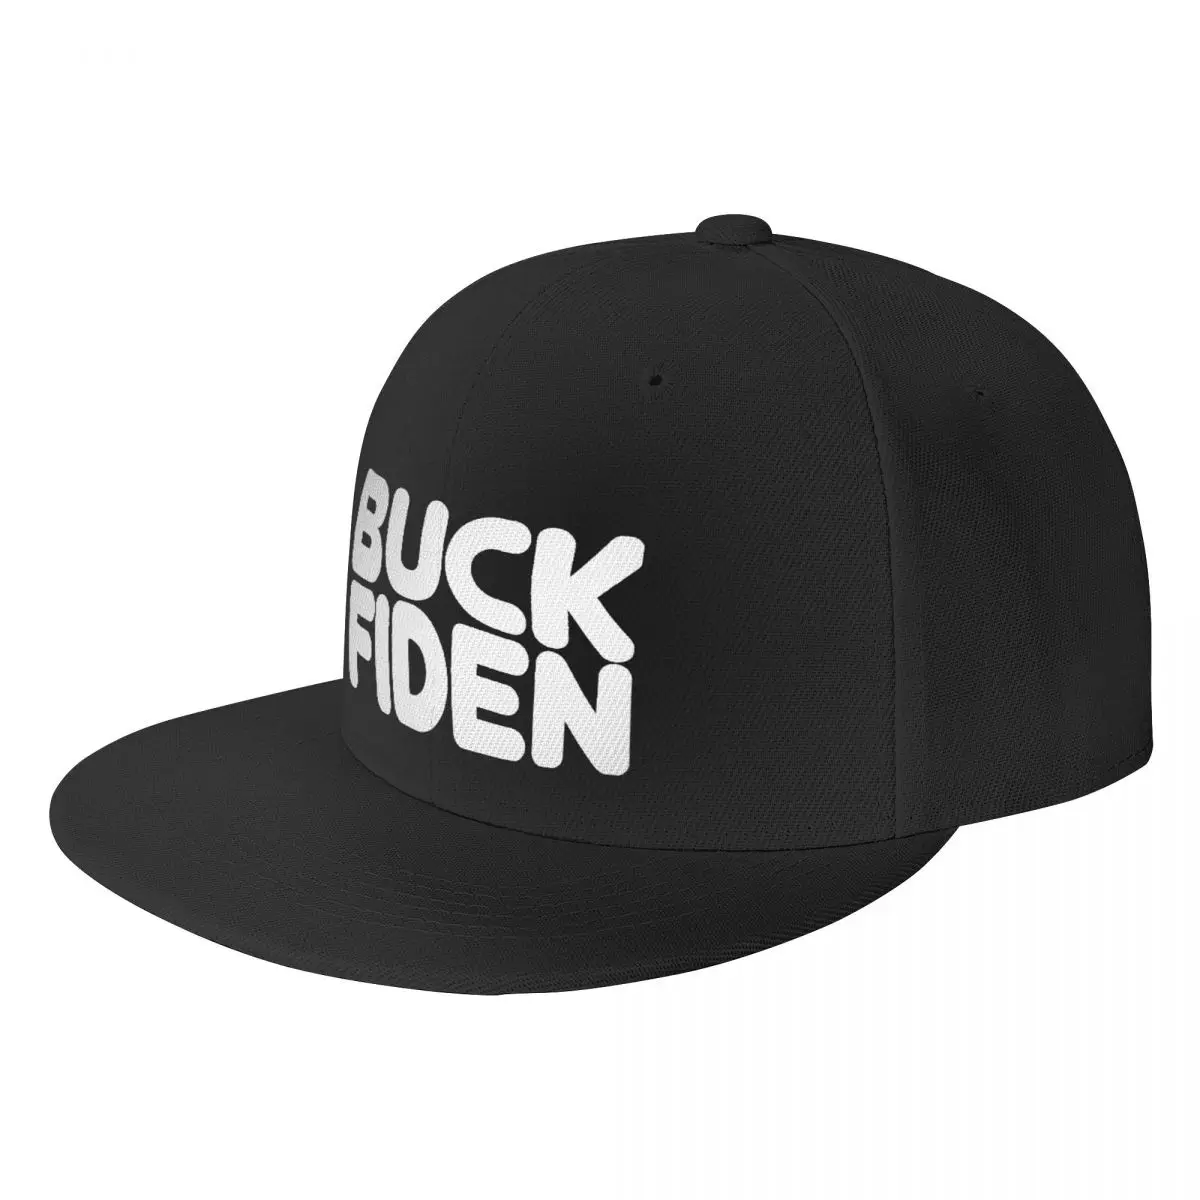 

Плоская кепка Buck Fiden, бейсболка, модная кепка, влагоотводящий спорт, хороший подарок